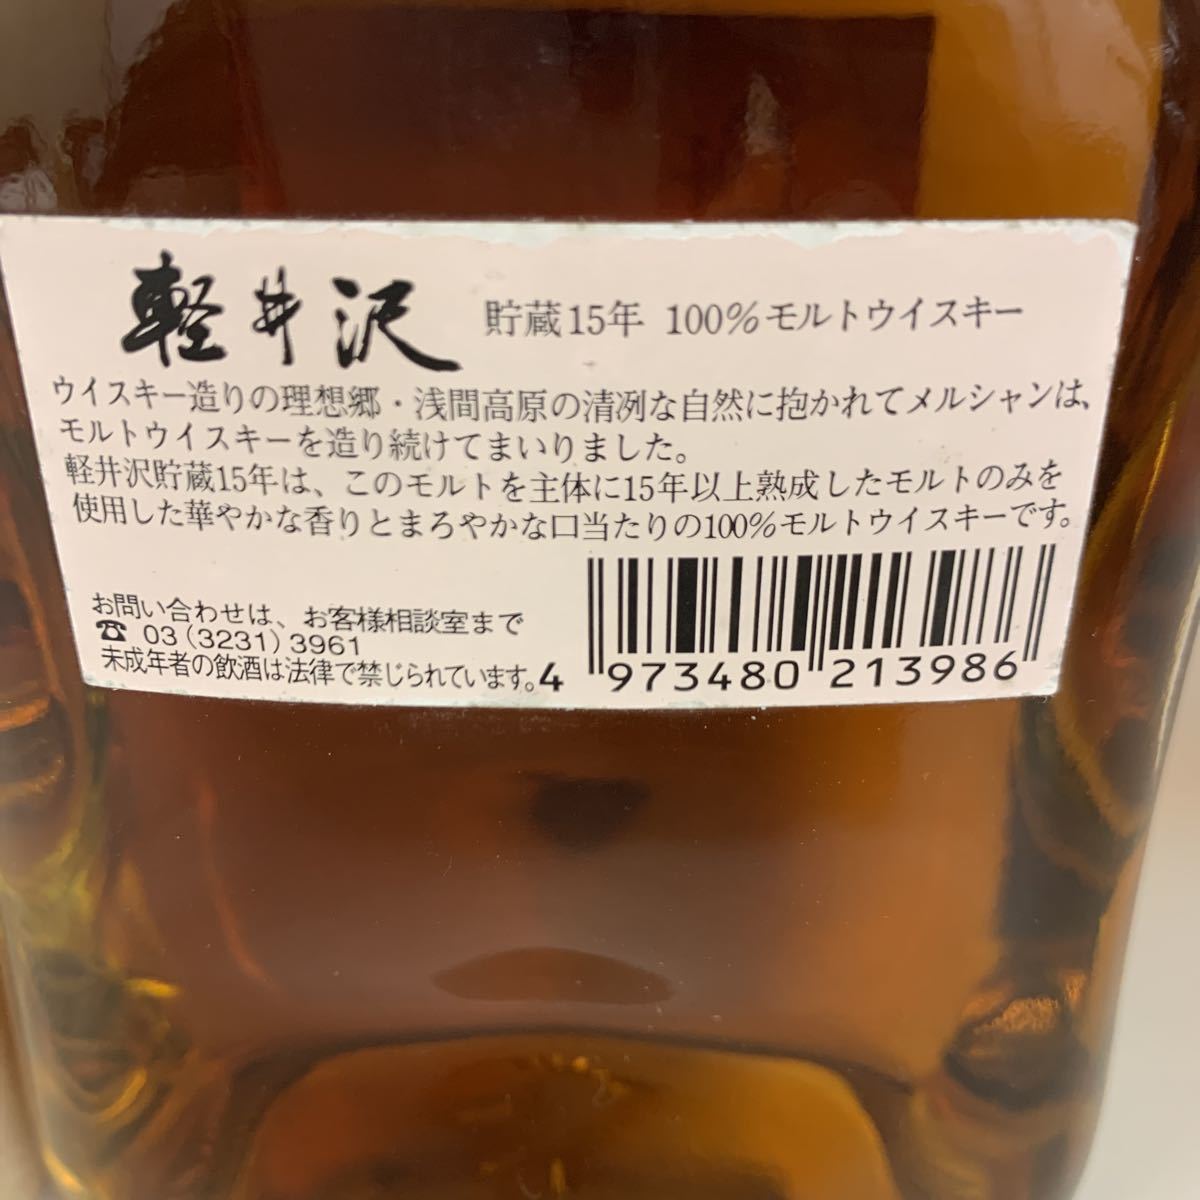 Mercian メルシャン 軽井沢 15年 100%モルトウイスキー 箱付き 古酒